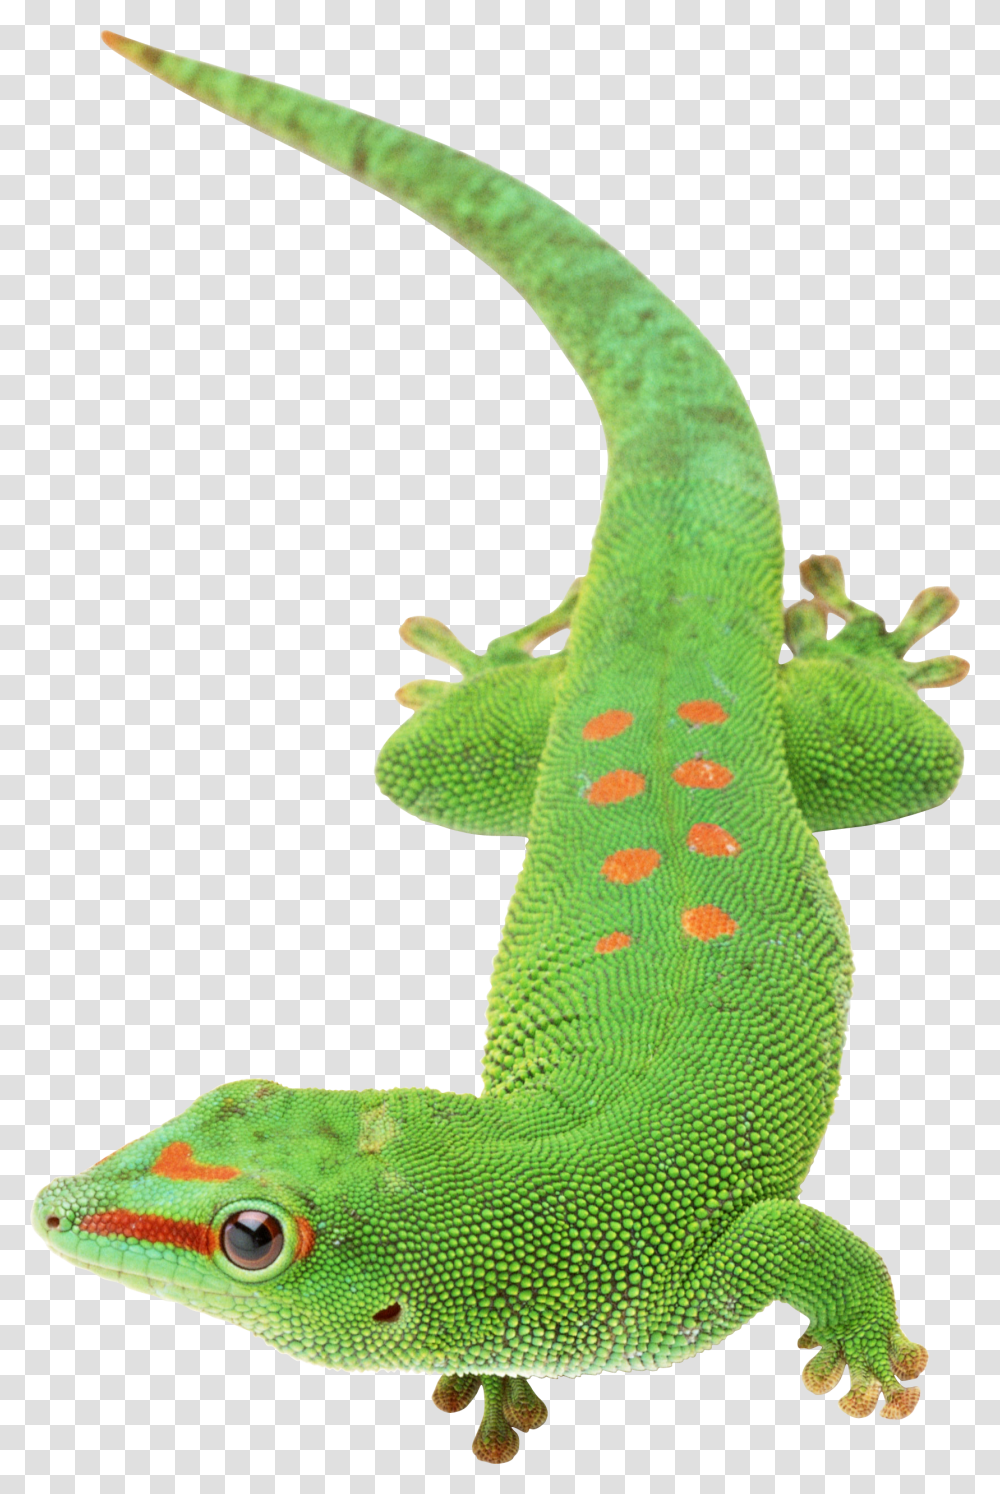 Lizard, Animals, Gecko, Reptile, Green Lizard Transparent Png